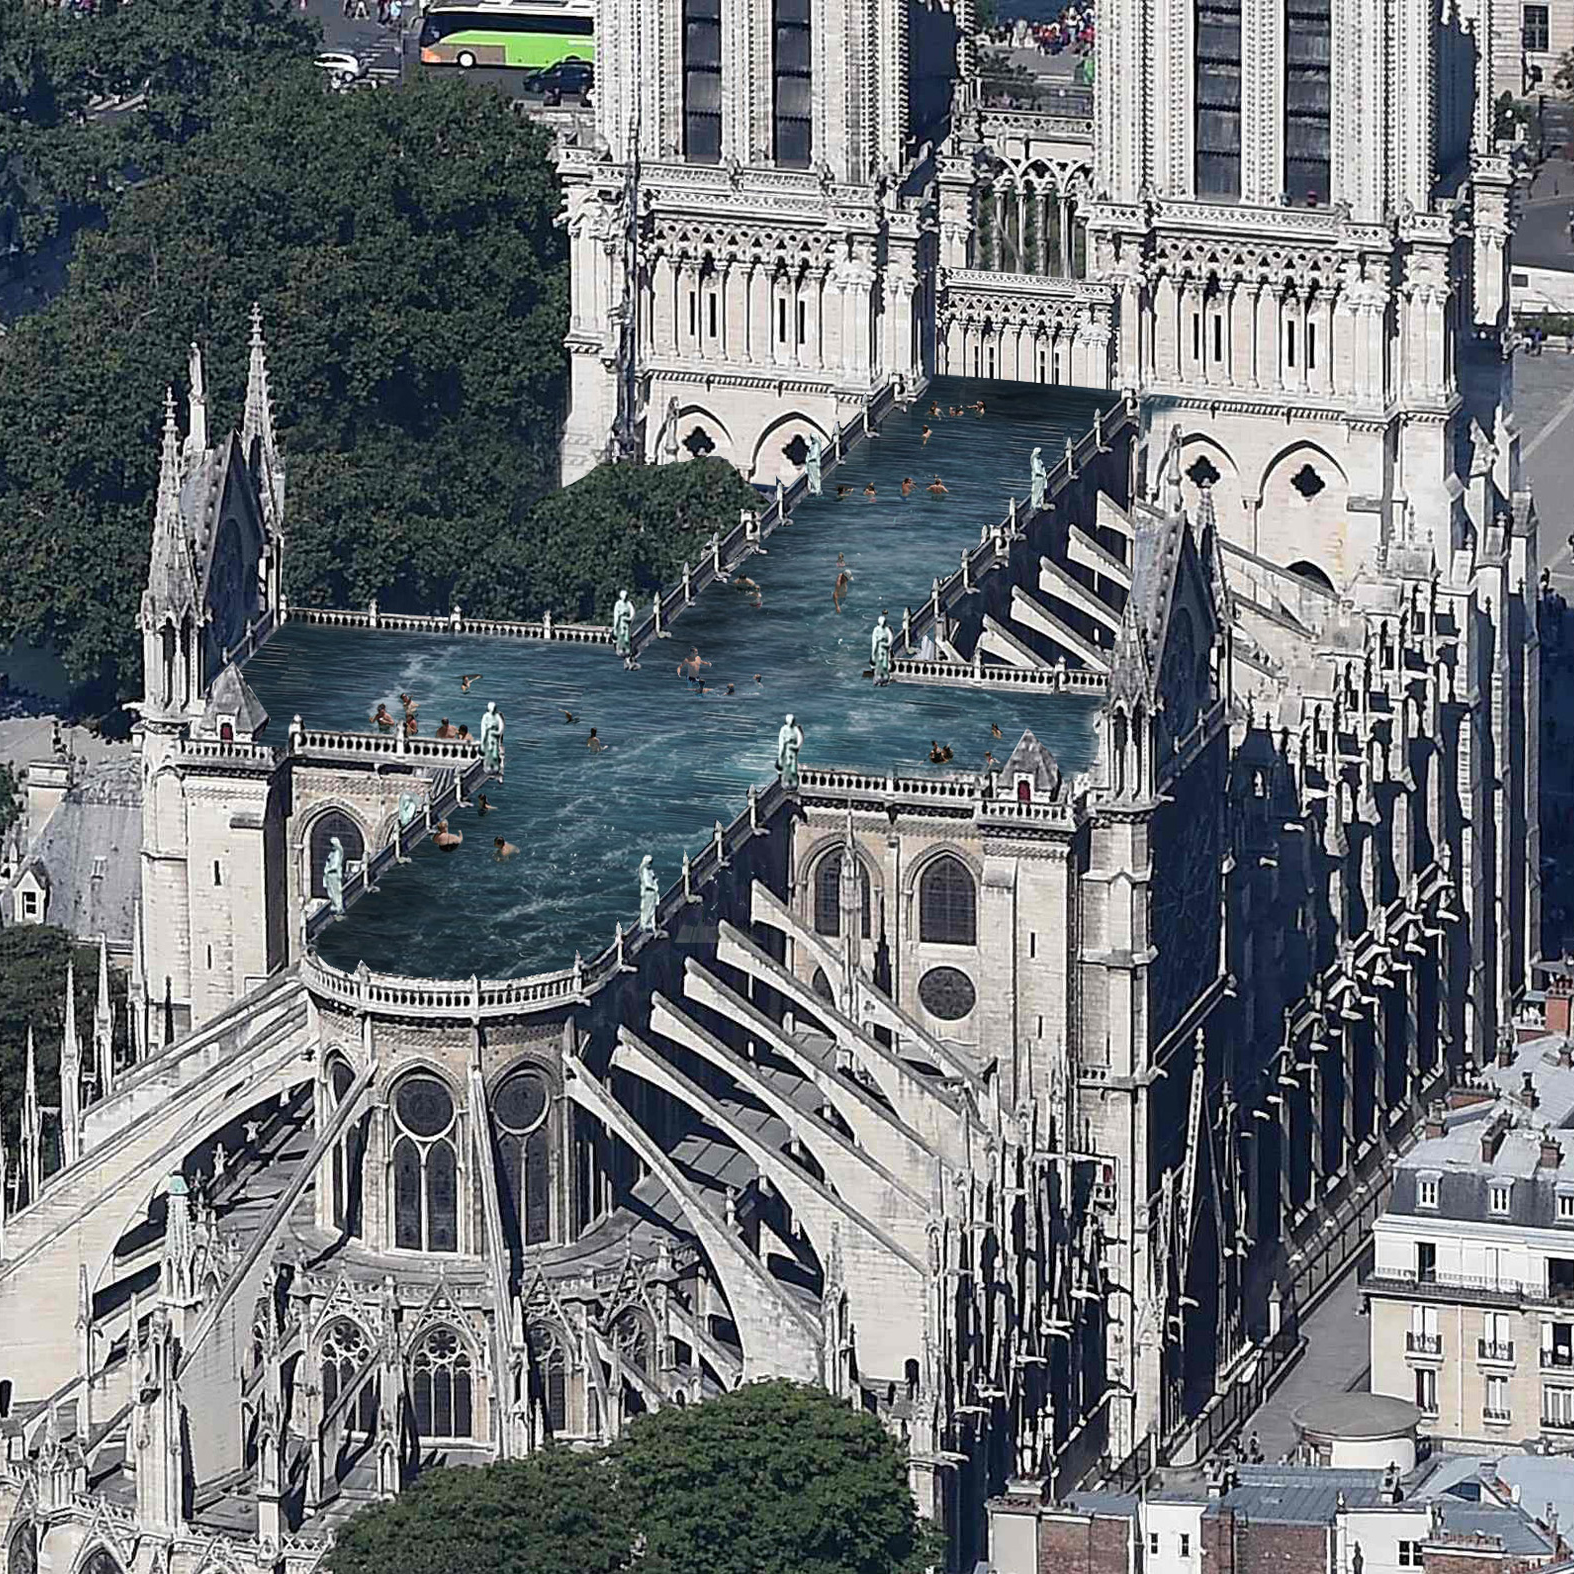 Dezeen's top 10 architecture trends 2019: Notre-Dame outrageous proposals